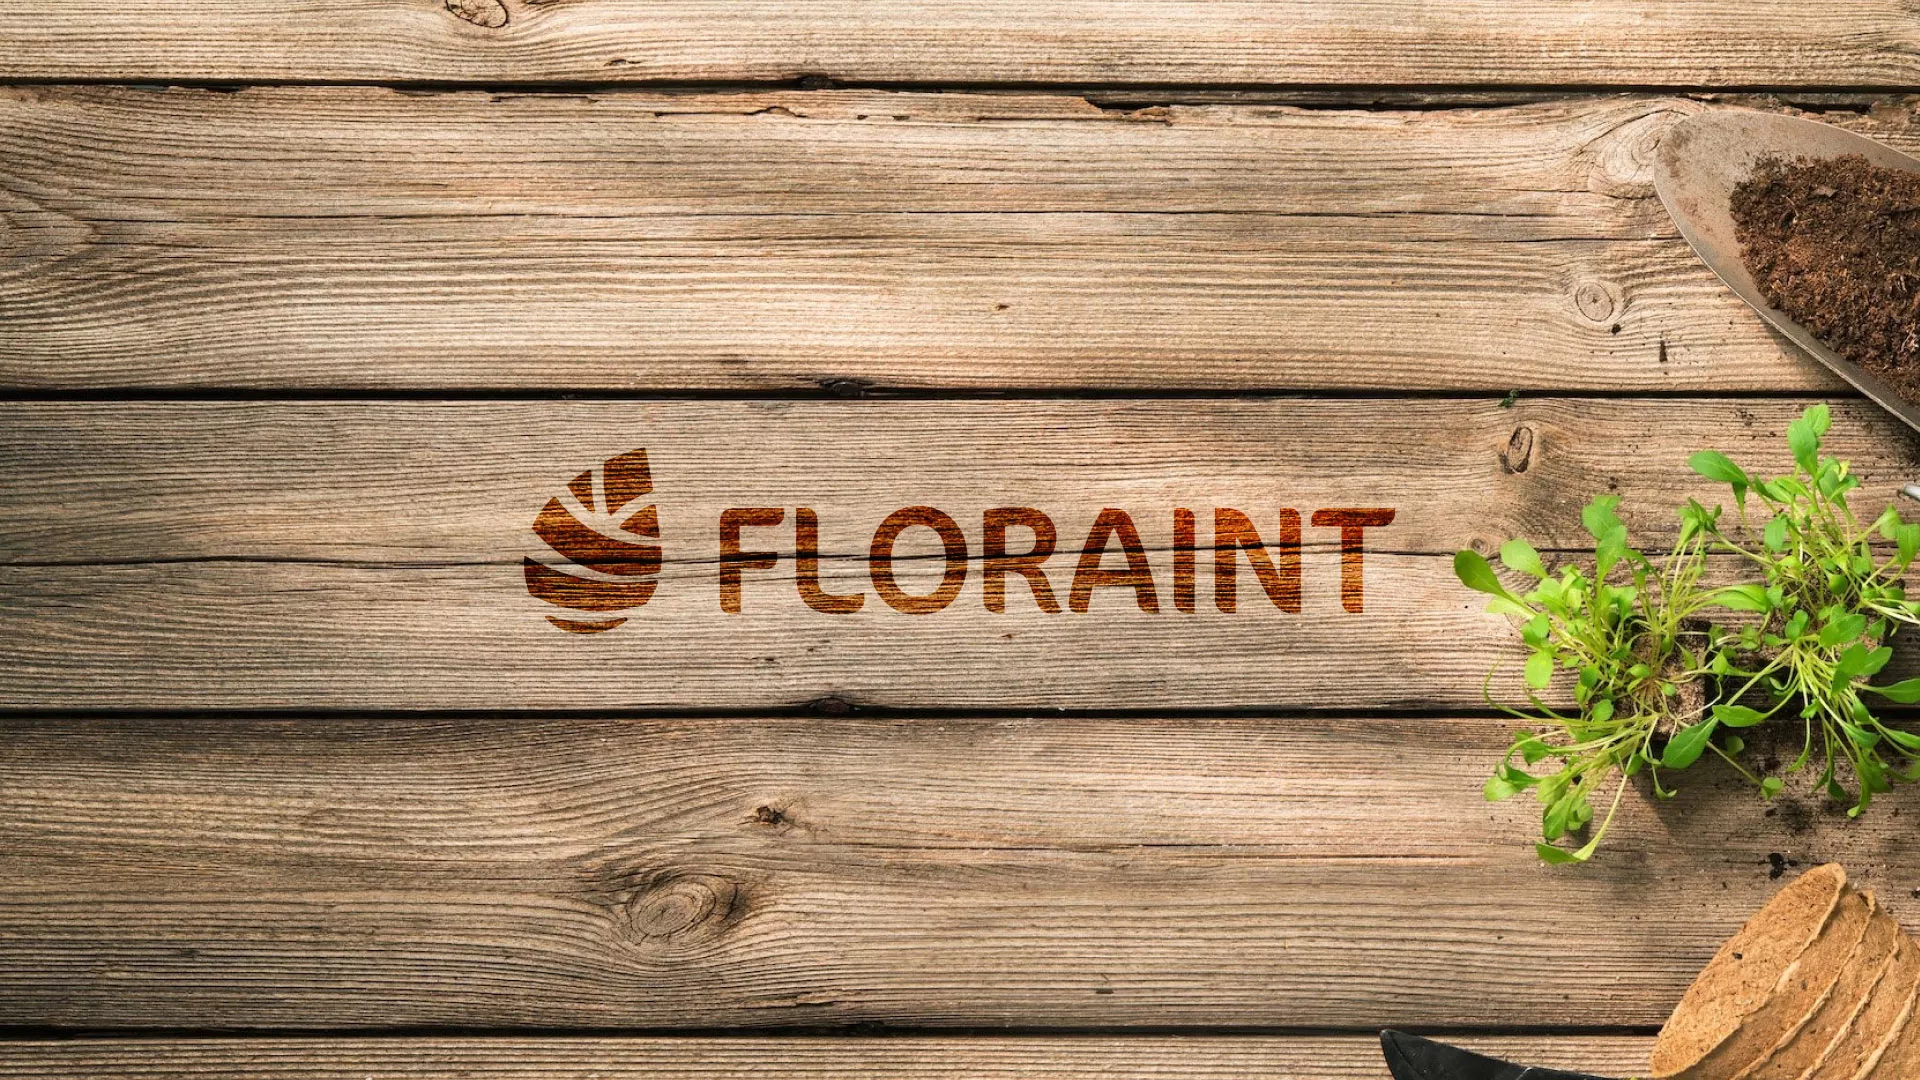 Создание логотипа и интернет-магазина «FLORAINT» в Болотном